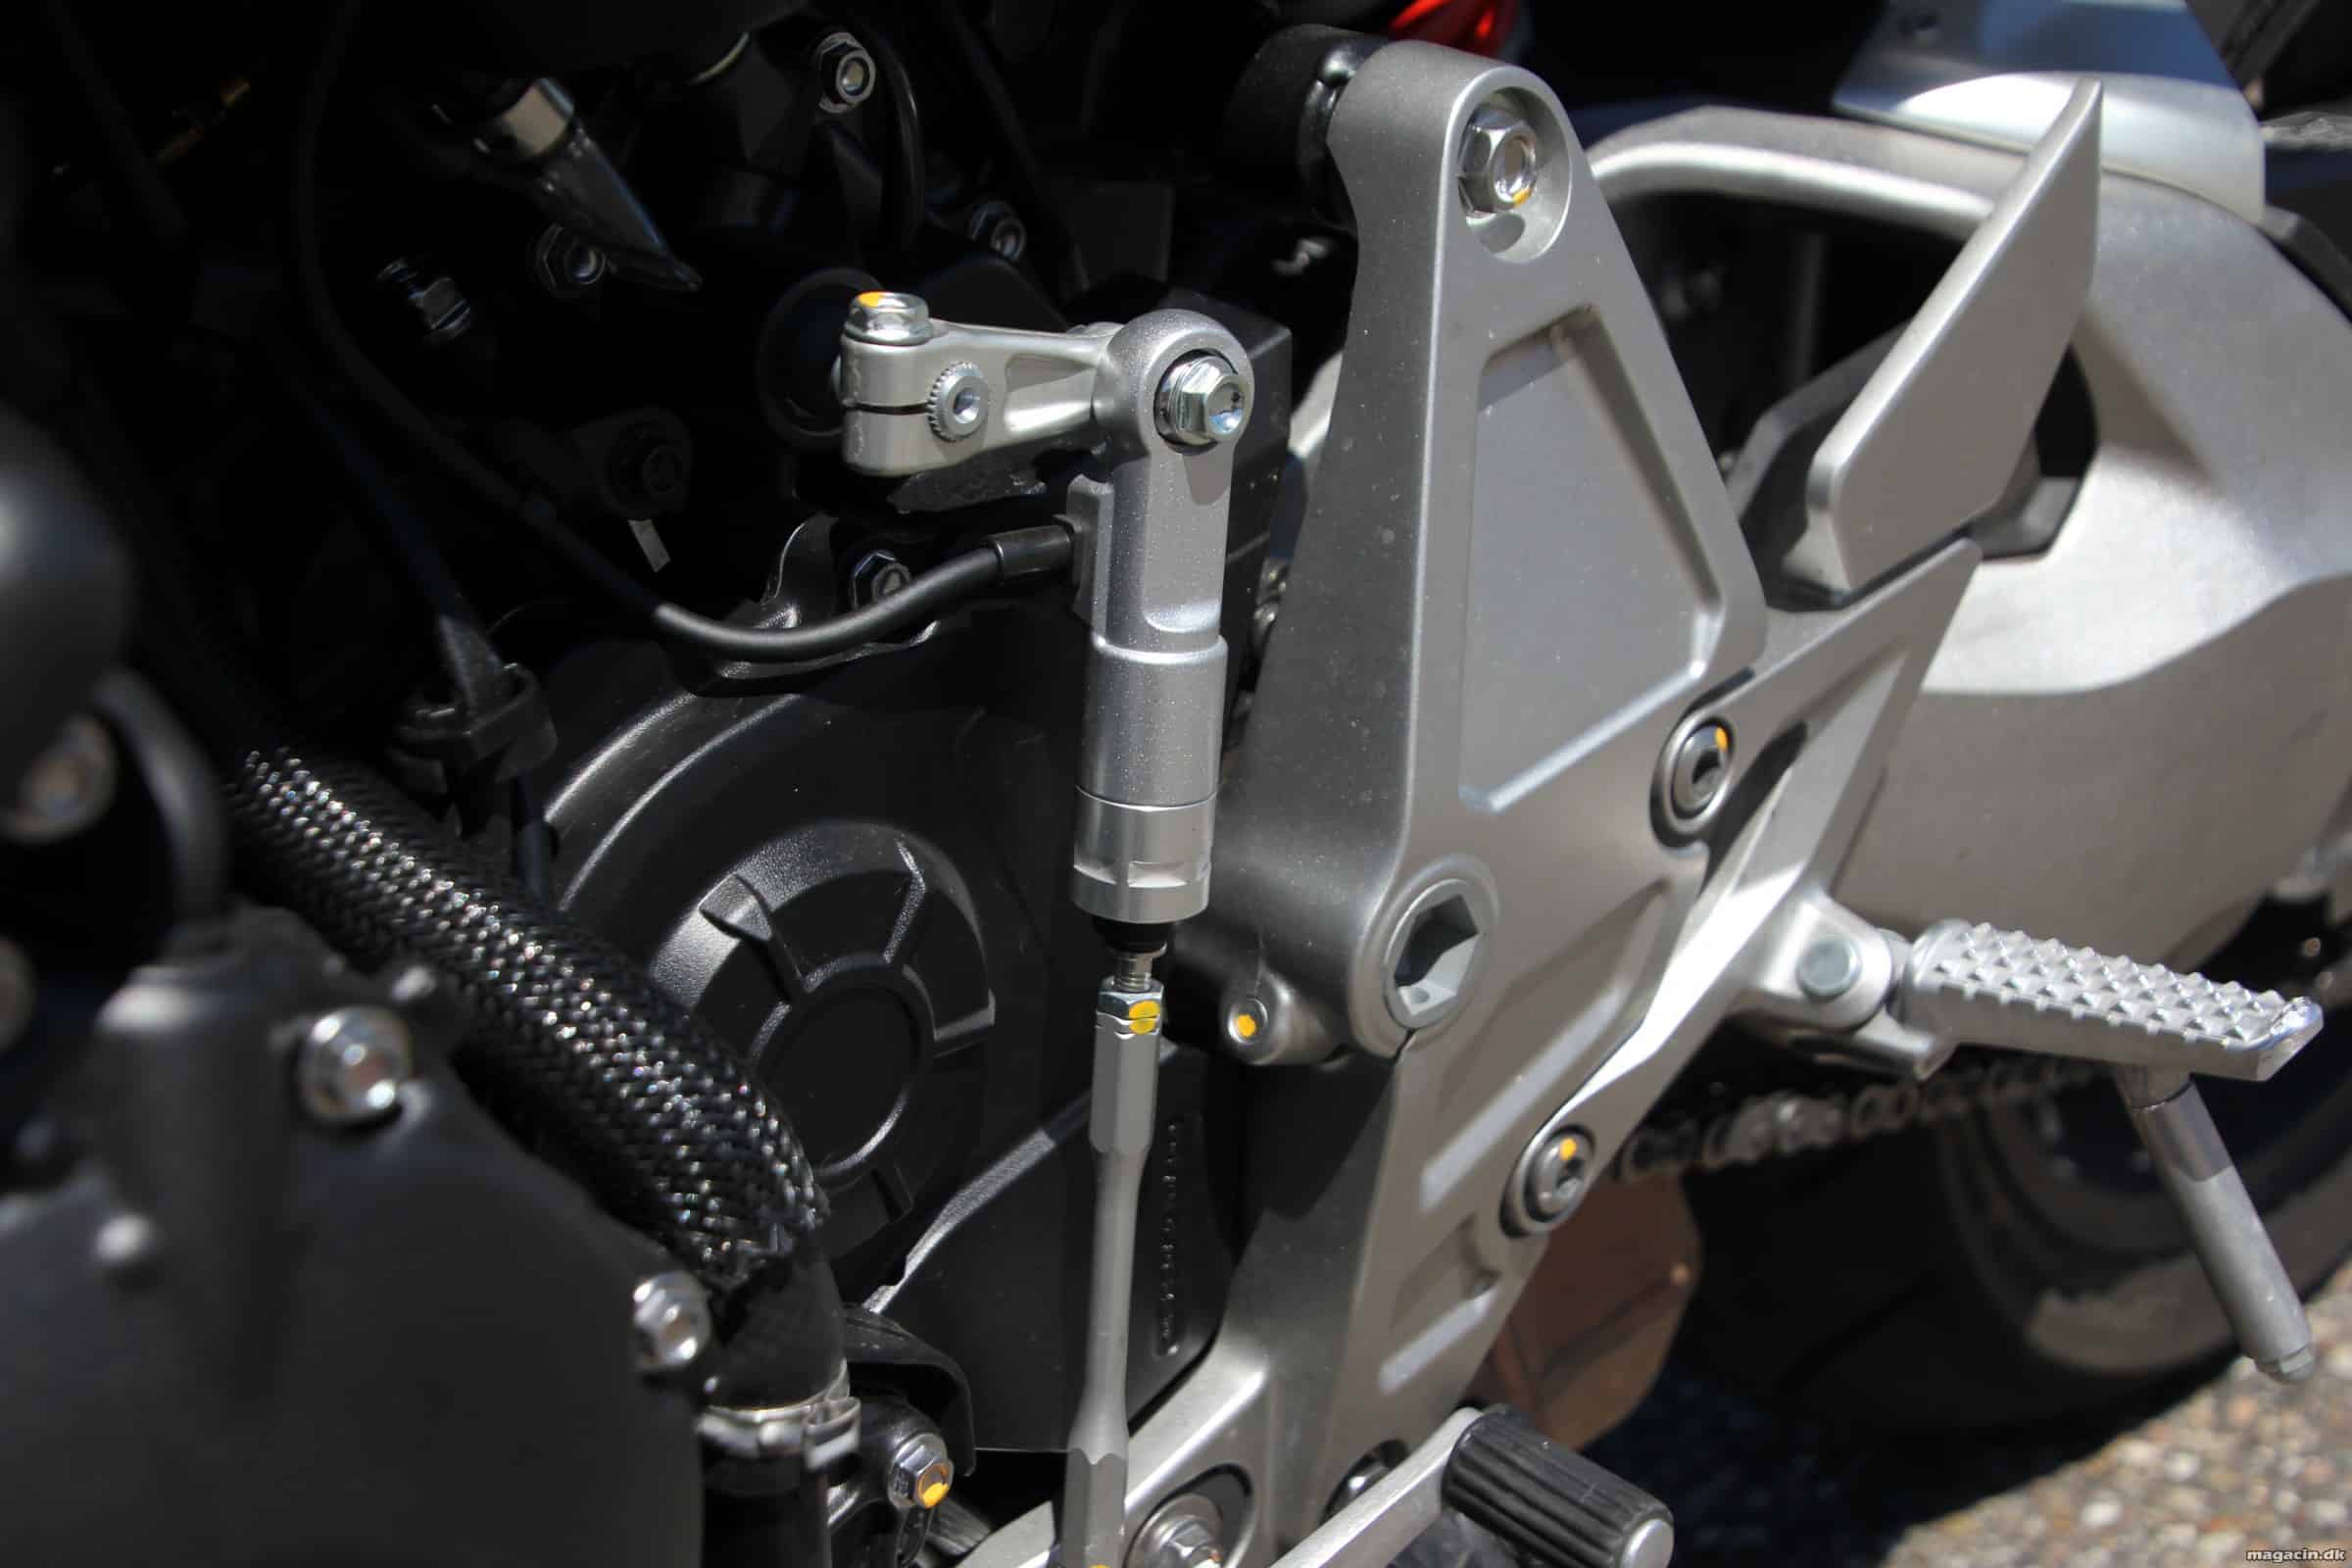 Test: 2018 Honda CB1000R overgår forventningerne